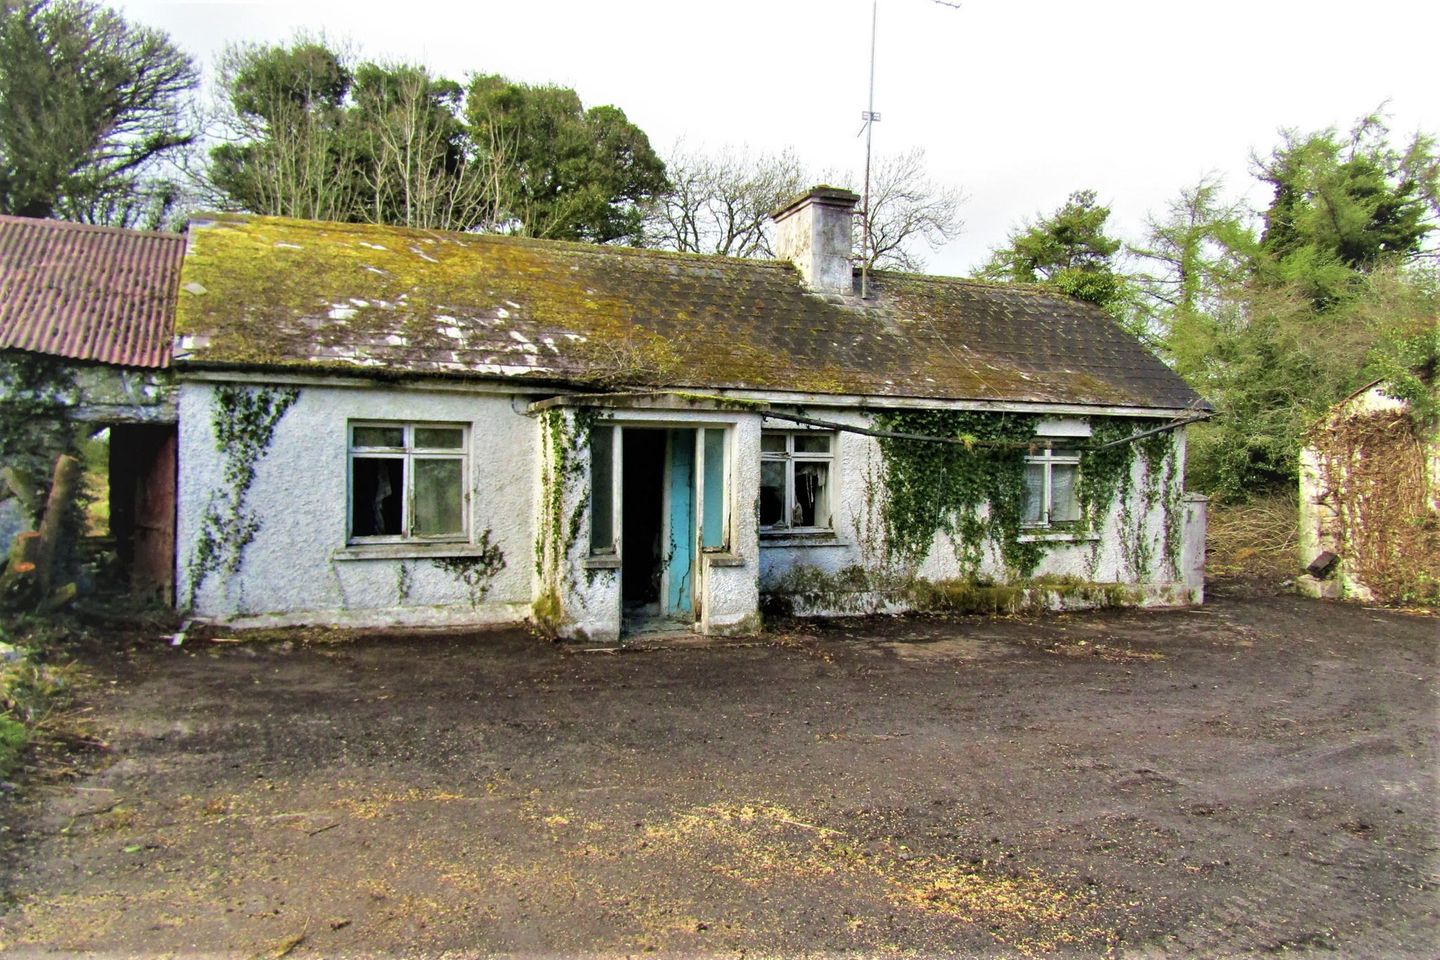 Dernaferst, Lough Gowna, Co. Cavan